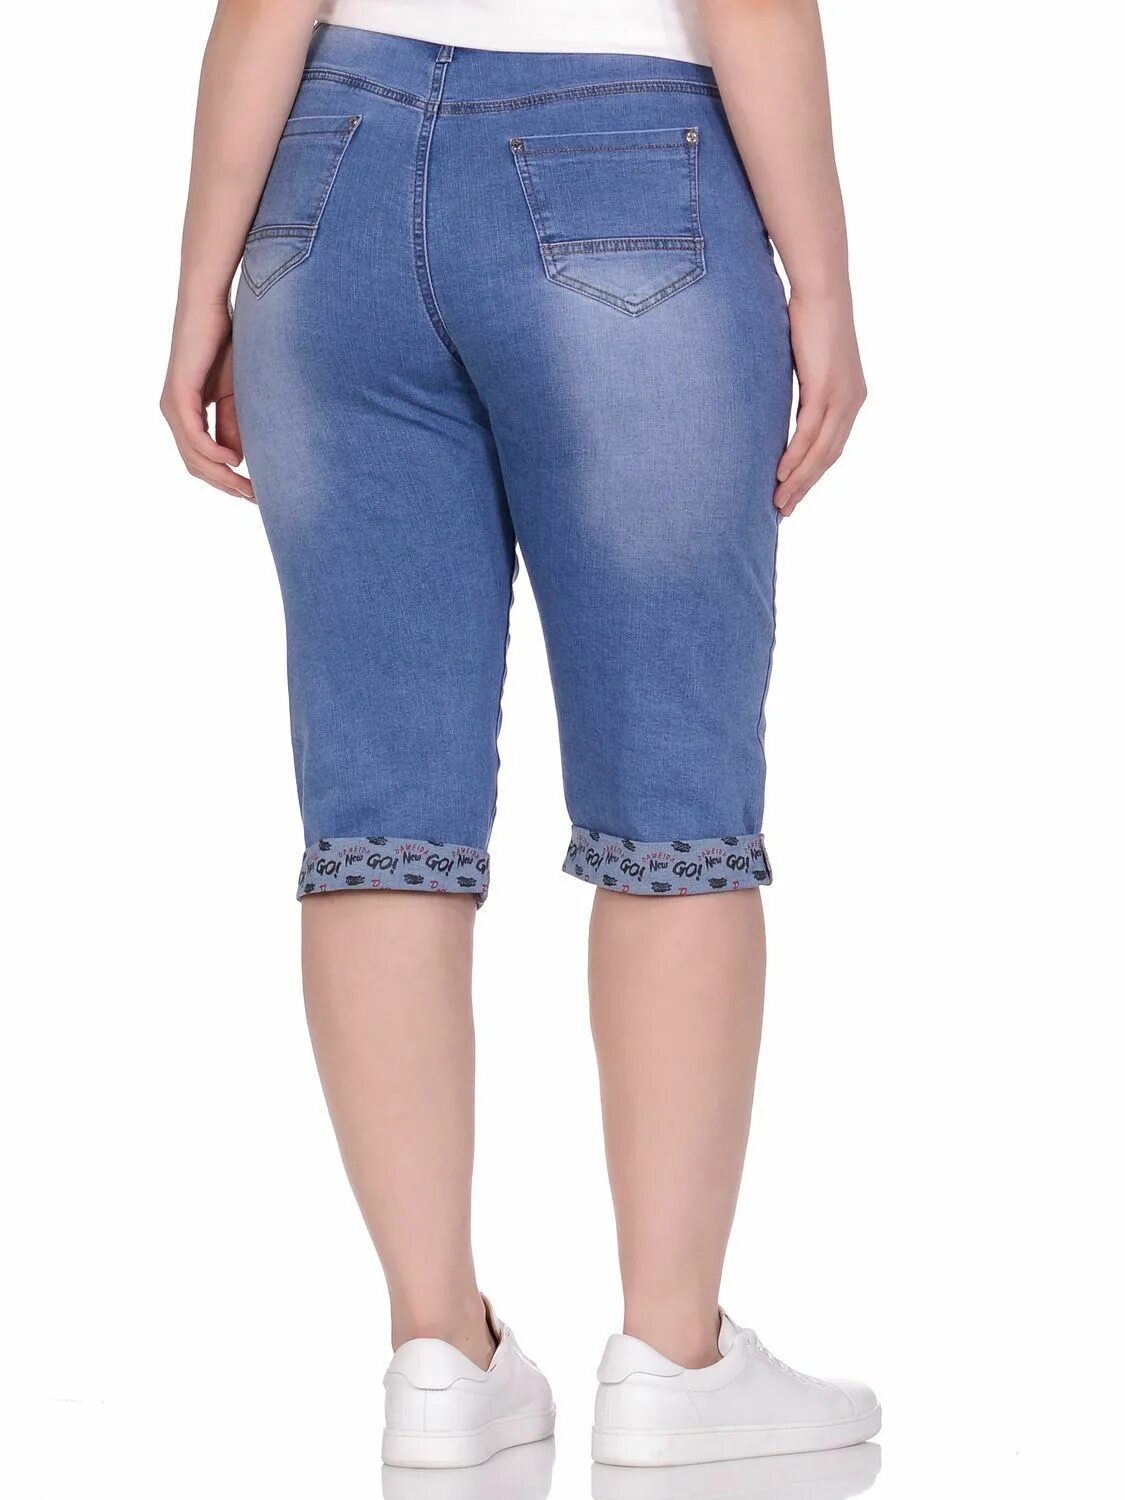 Gloria Jeans бриджи женские джинсовые стретч. Модные джинсовые бриджи. Бриджи с завышенной талией. Бриджи джинсовые женские стрейч.